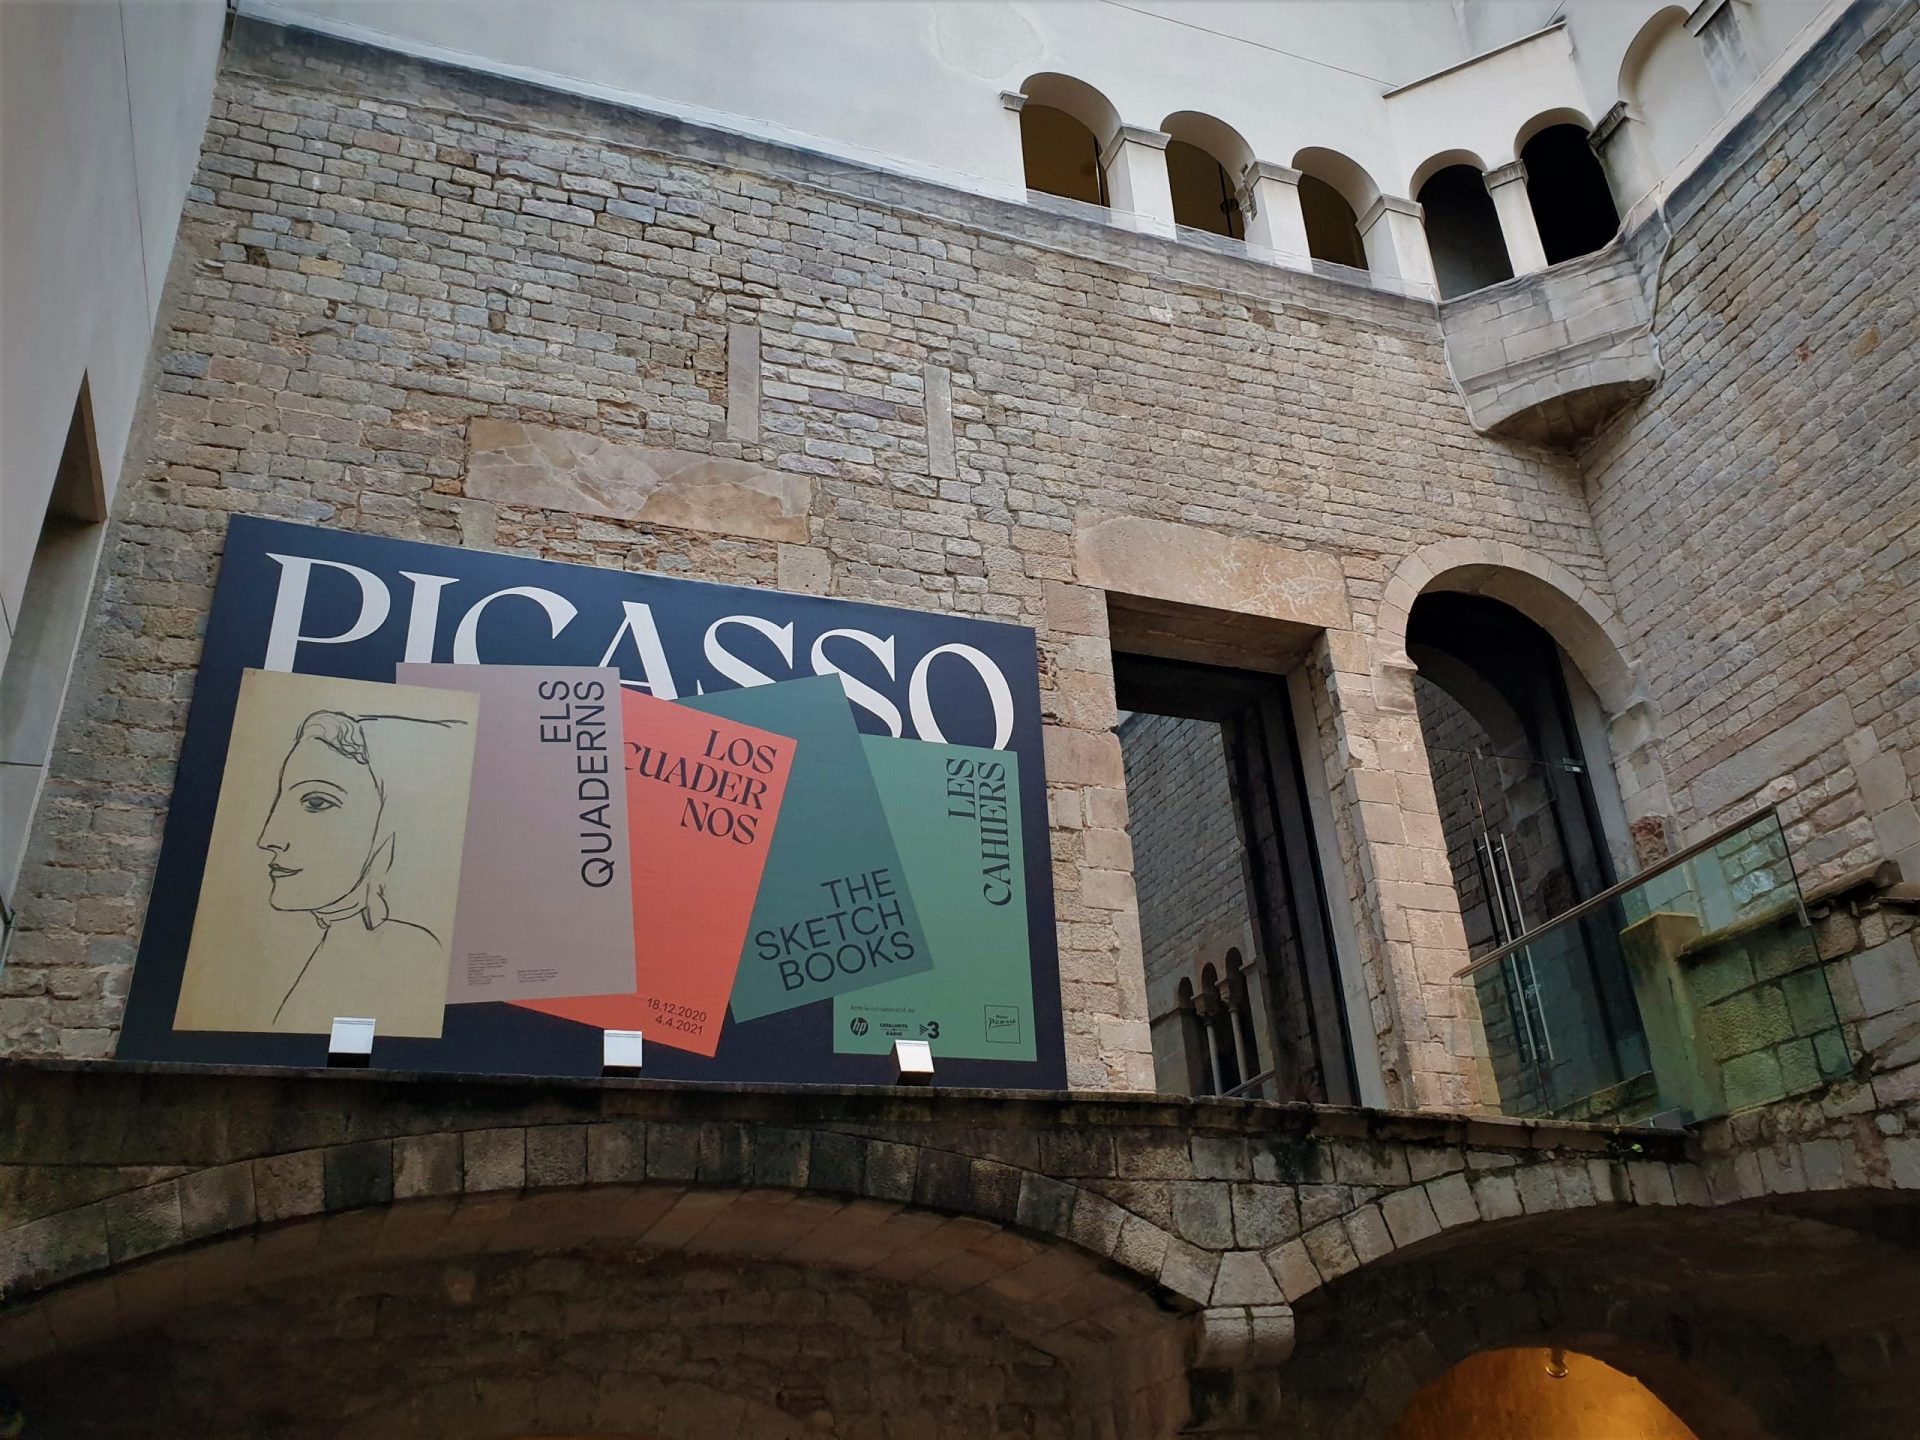 Musée Picasso de Barcelone, entrée de l'exposition temporaire pour les visites guidées.